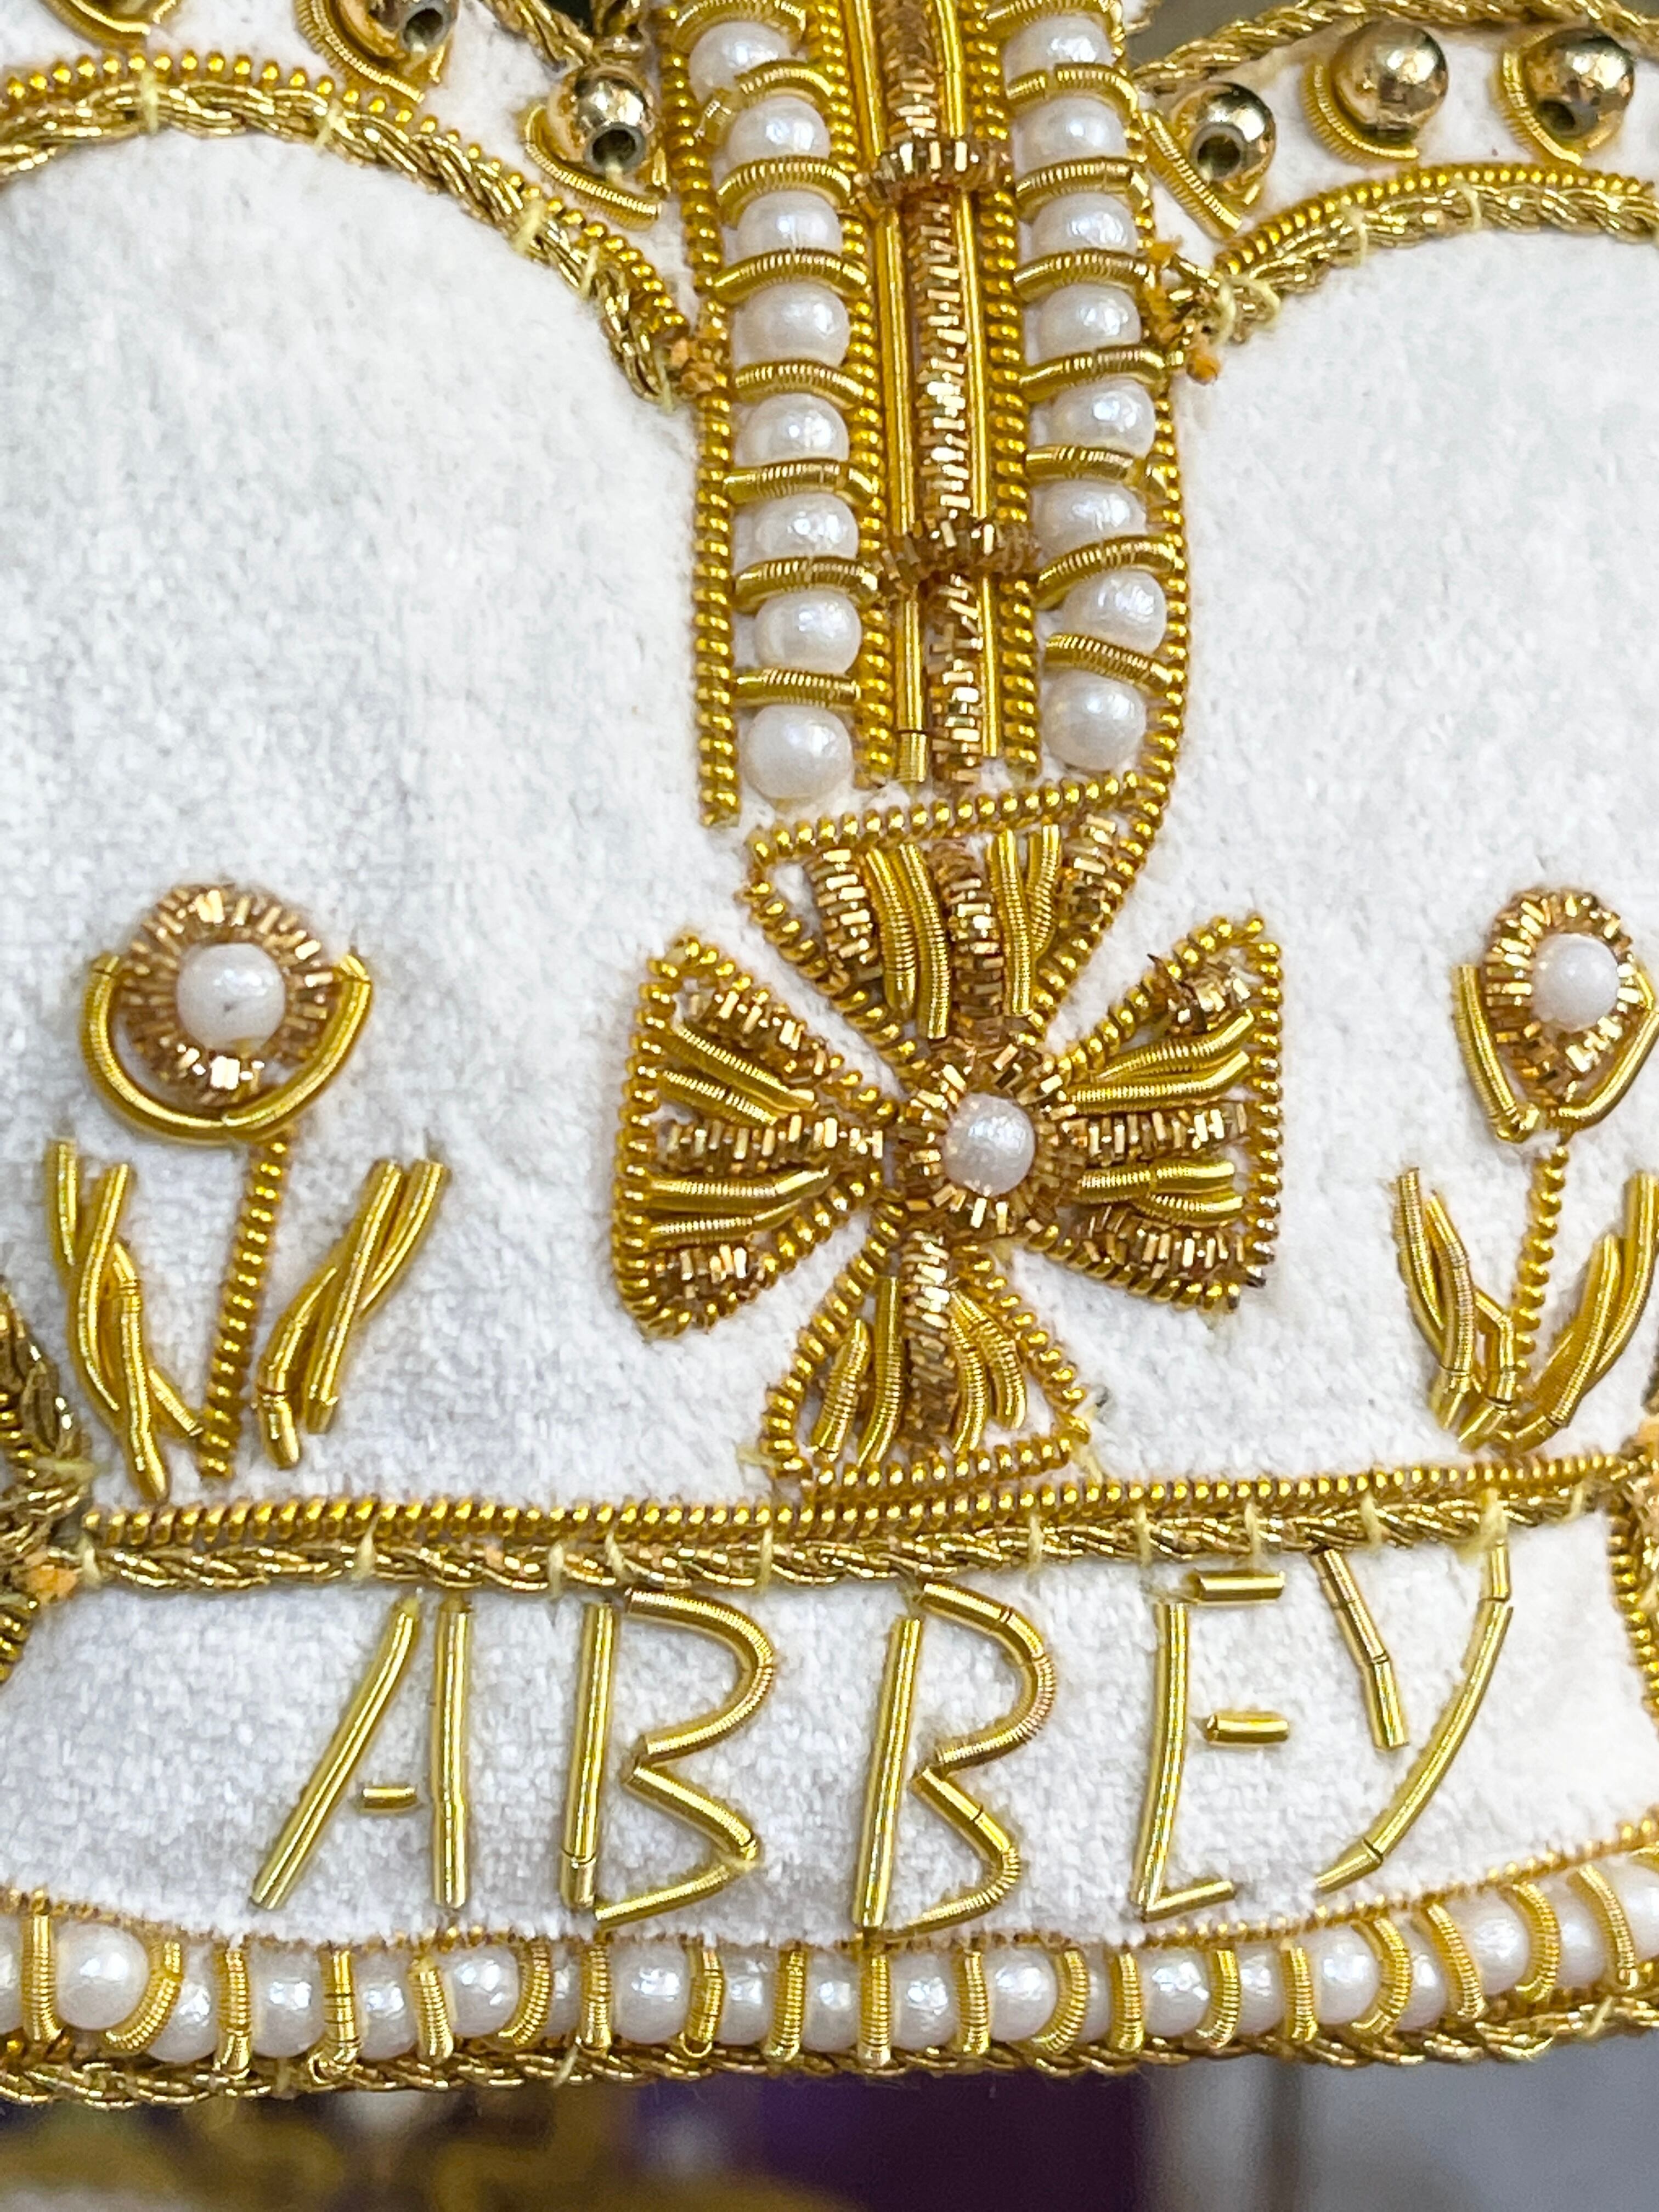 30％OFF!『Westminster Abbey』ウエストミンスター クラウンオーナメント 王冠 エリザベス女王 70th記念  オーナメント  Crown Decoration